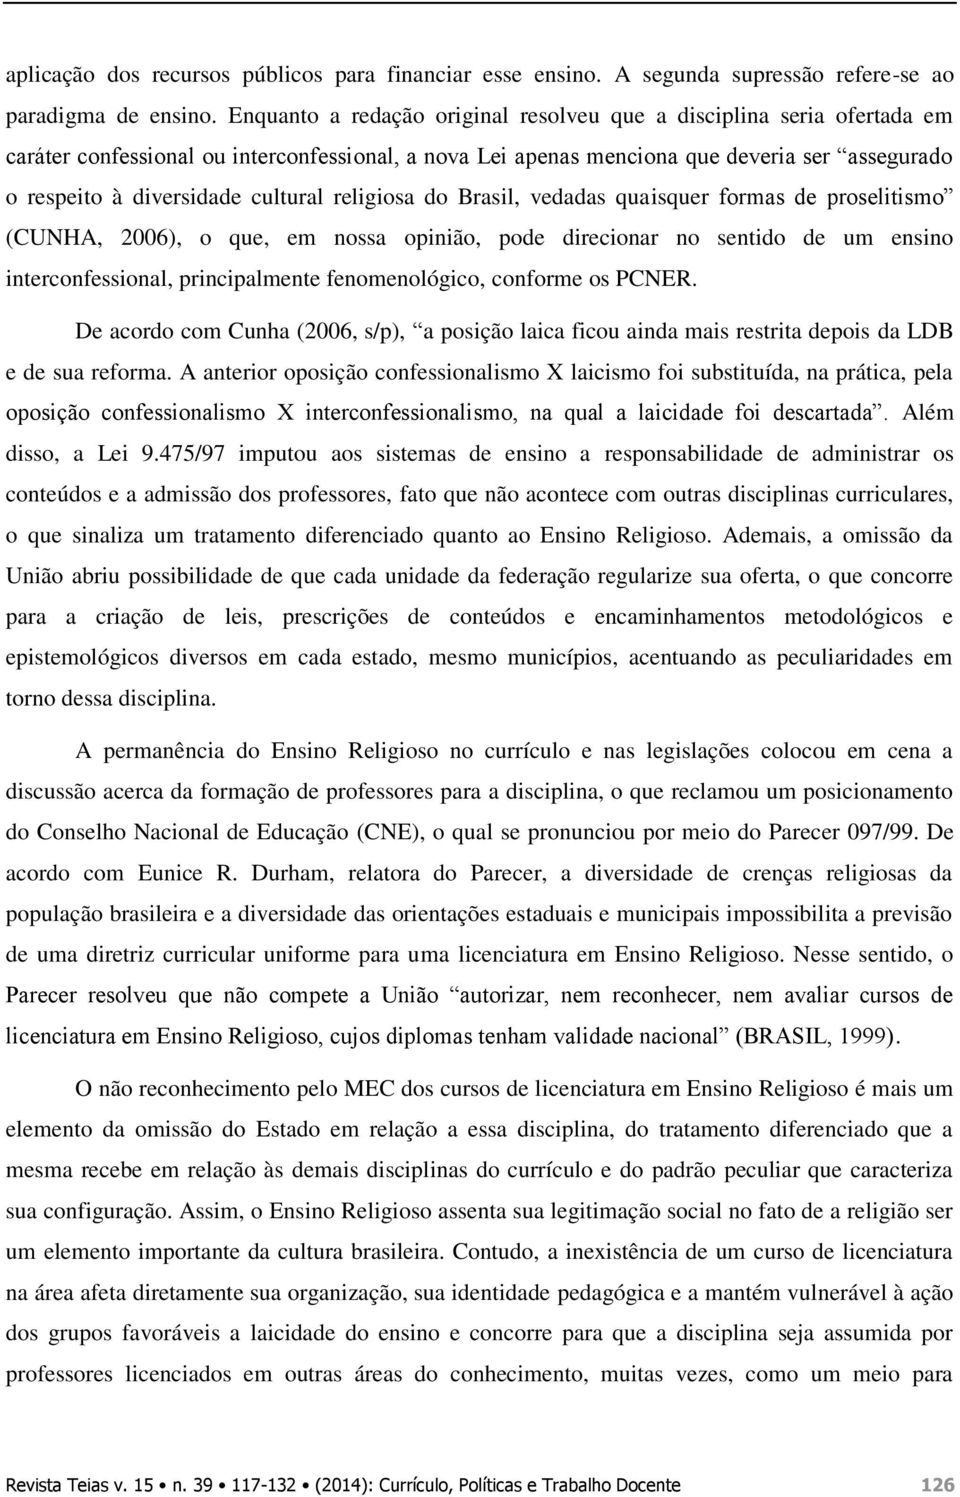 cultural religiosa do Brasil, vedadas quaisquer formas de proselitismo (CUNHA, 2006), o que, em nossa opinião, pode direcionar no sentido de um ensino interconfessional, principalmente